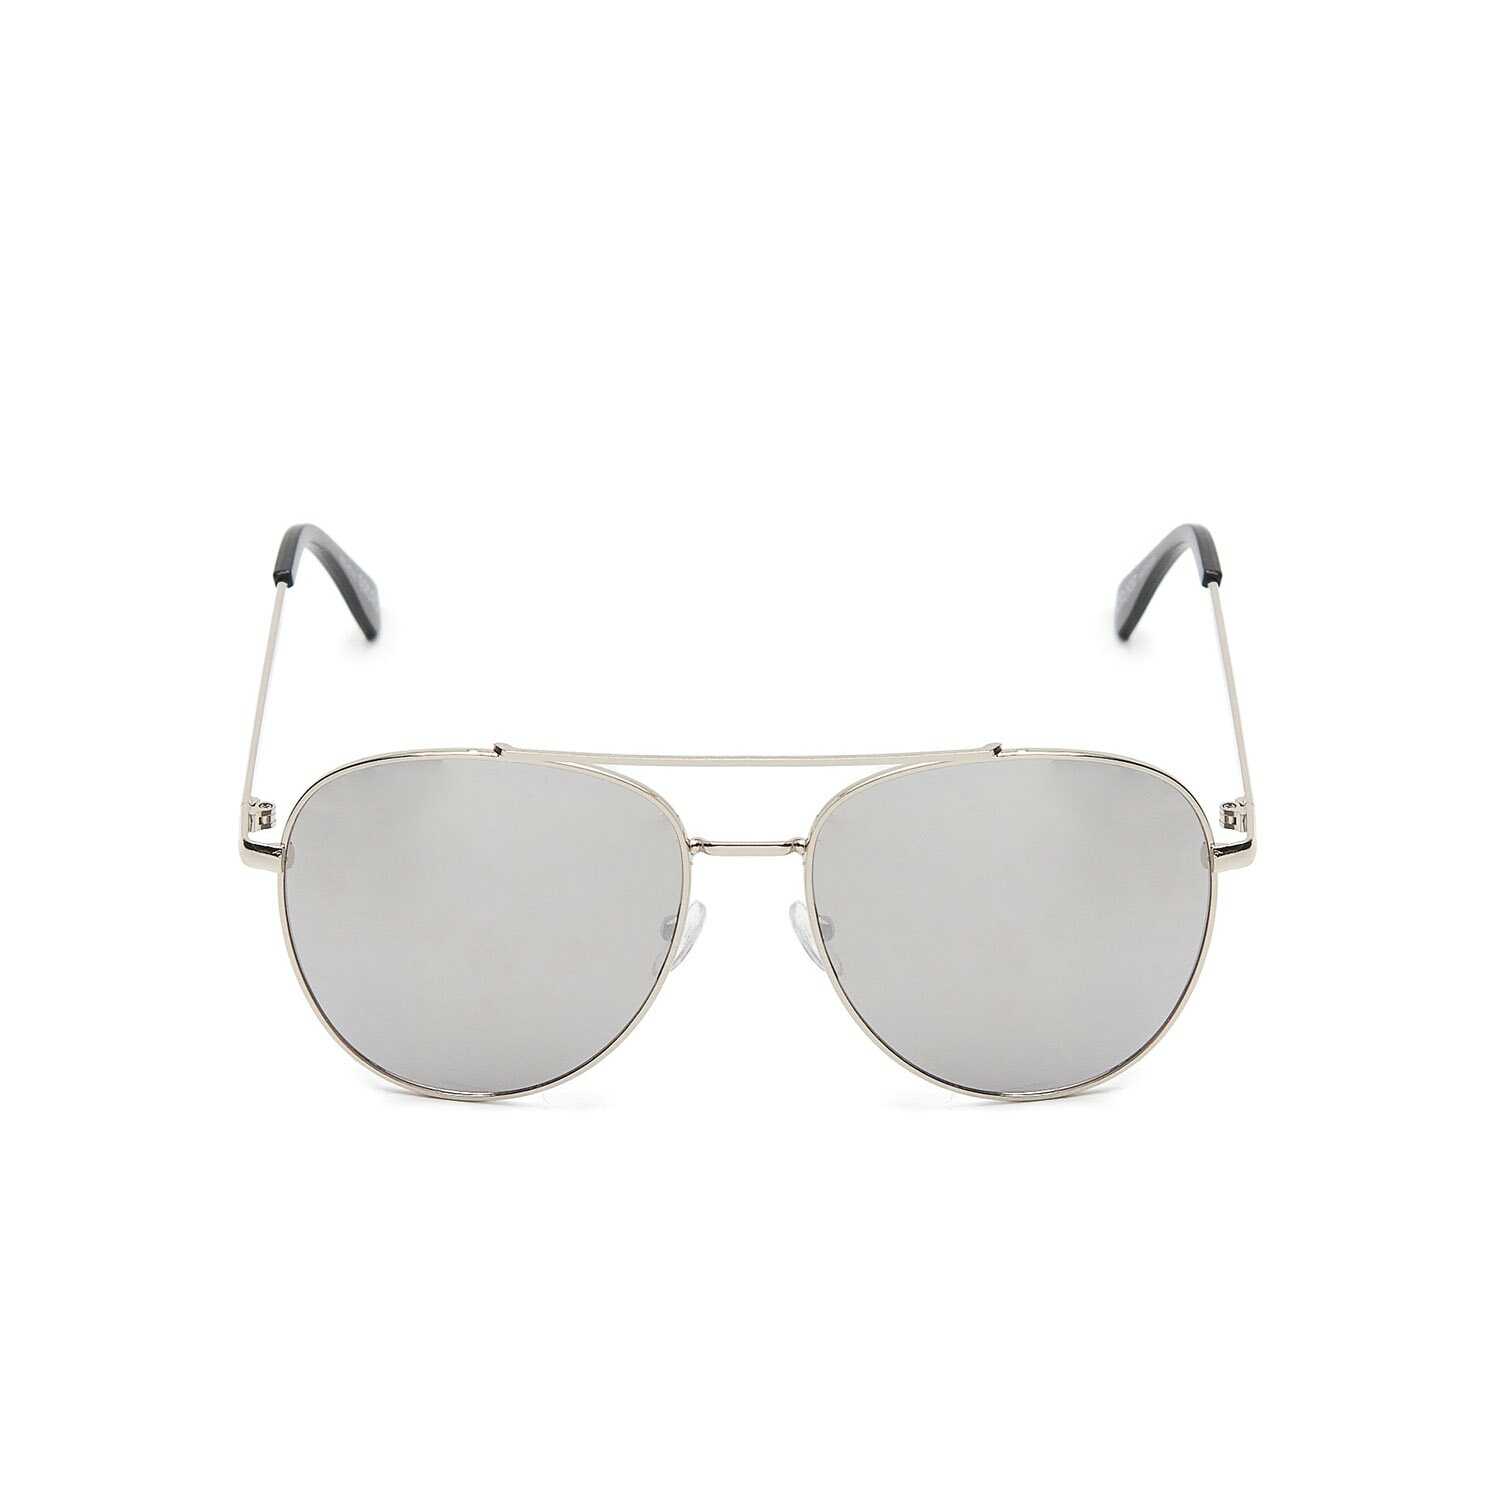 Cropp - Szare okulary przeciwsłoneczne - Biały